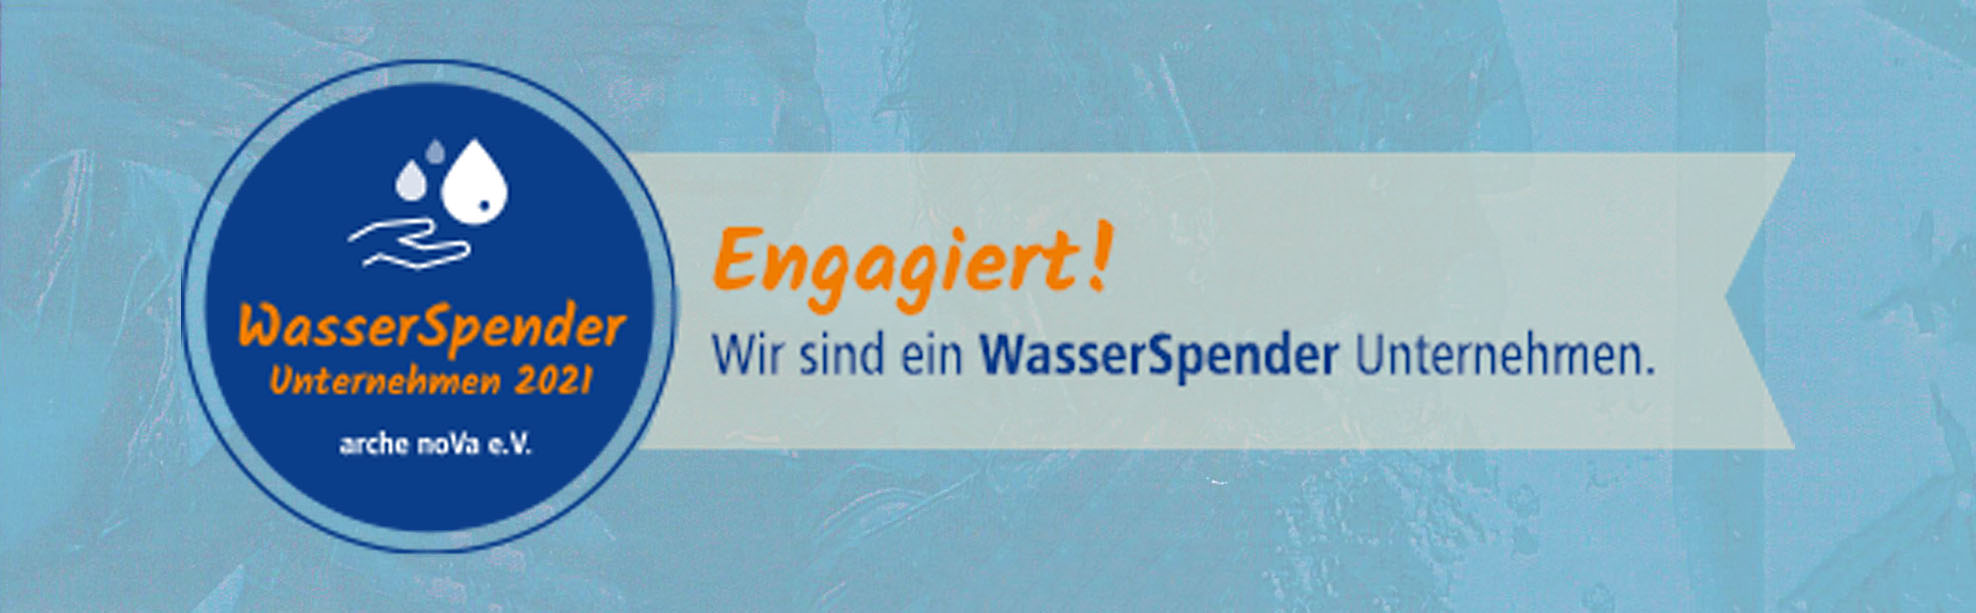 WasserSpender Unternehmen 2021 – DATEC Netzwerke & Druckerlösungen GmbH